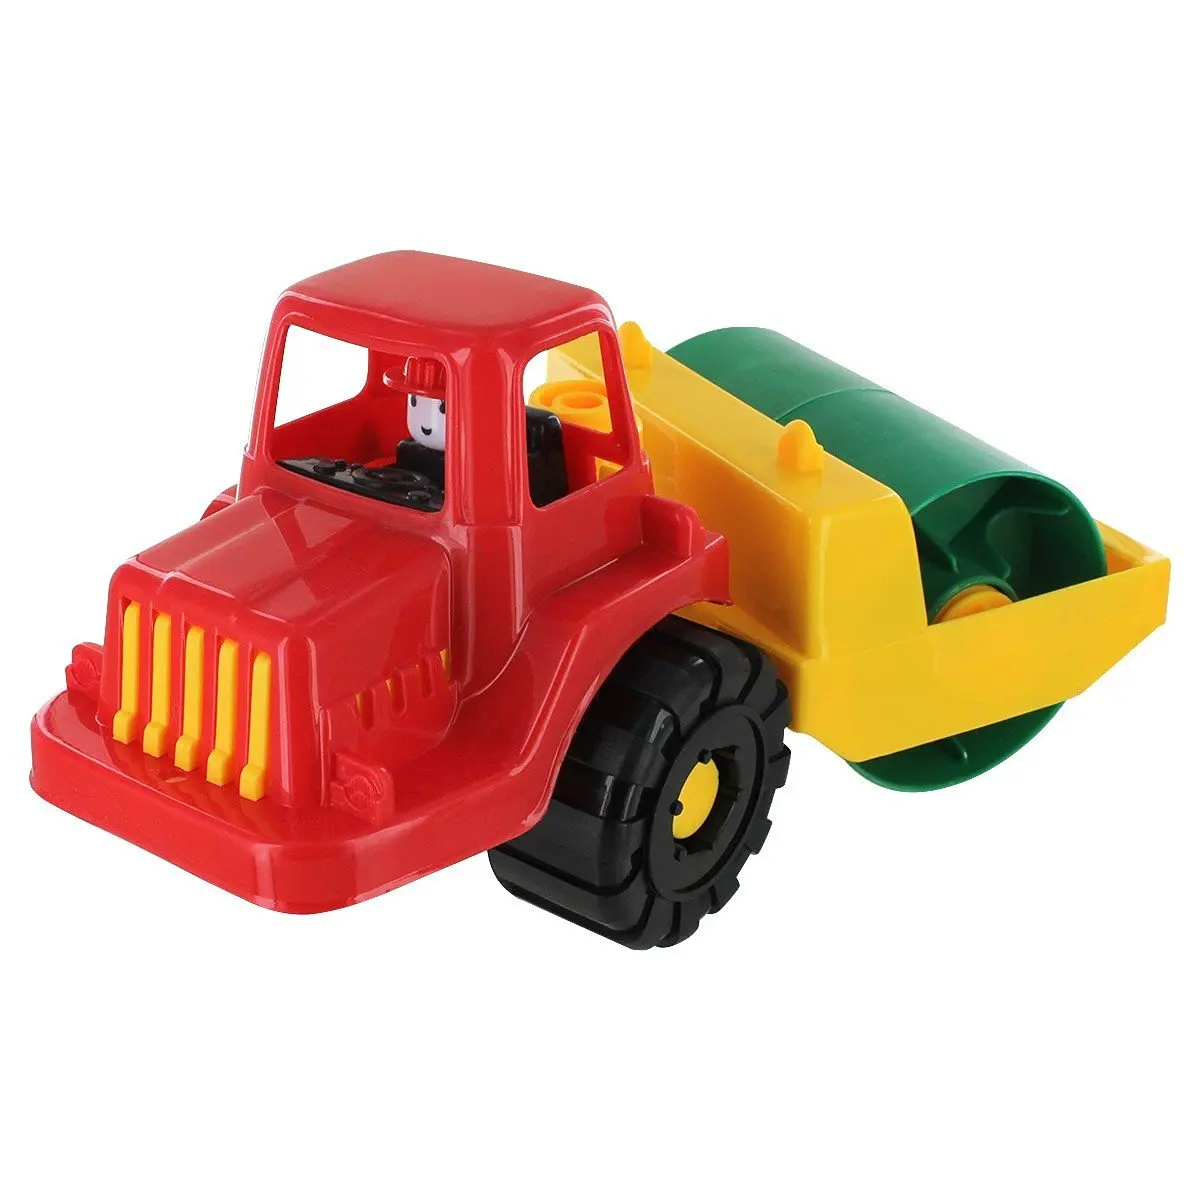 toy steam roller trucks